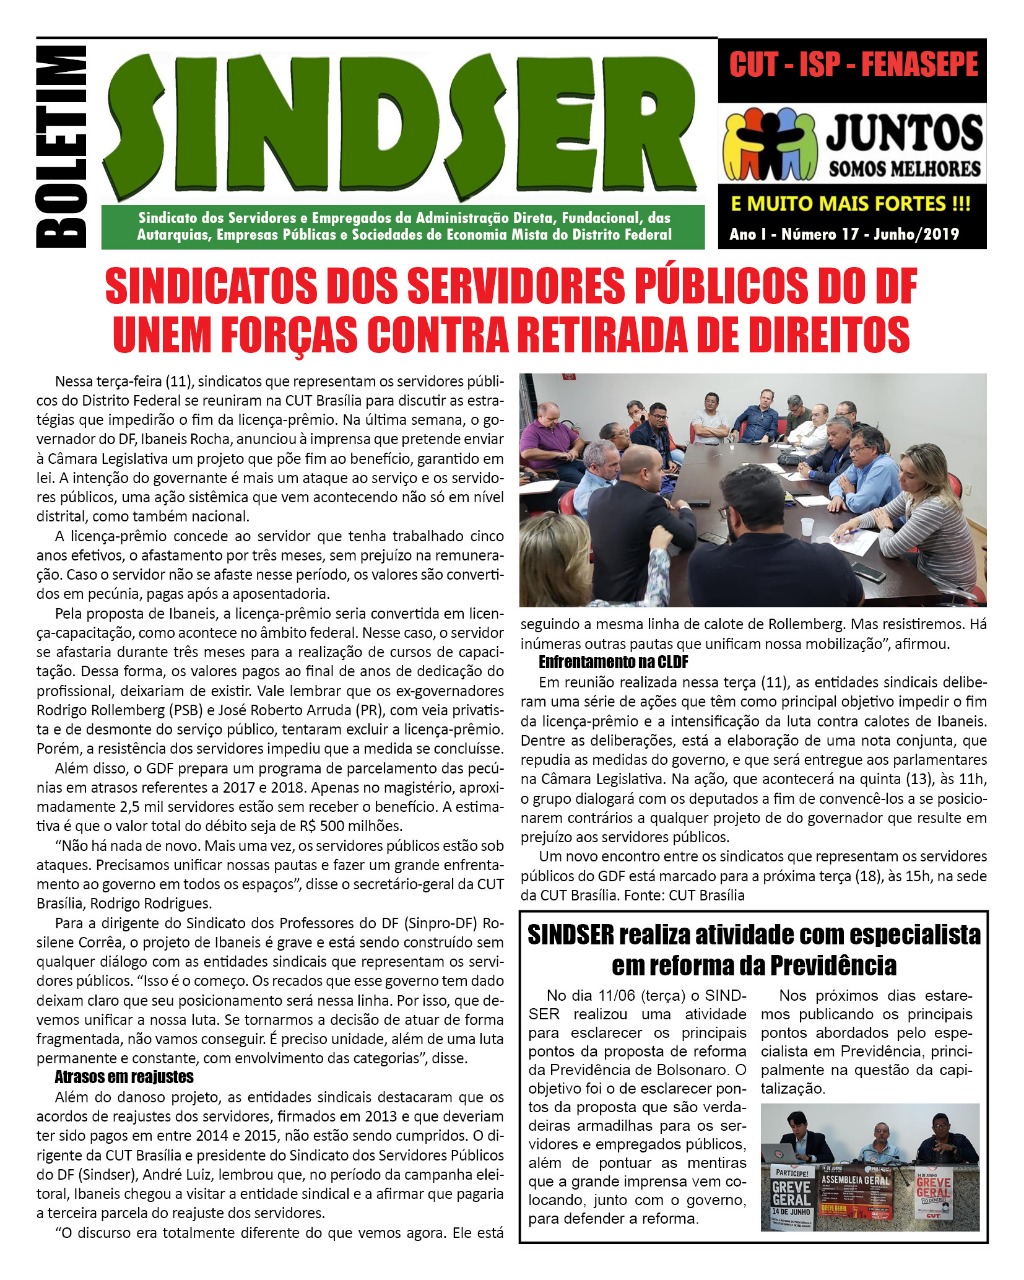 Sindicatos dos Servidores Públicos do DF unem forças contra retirada de direitos